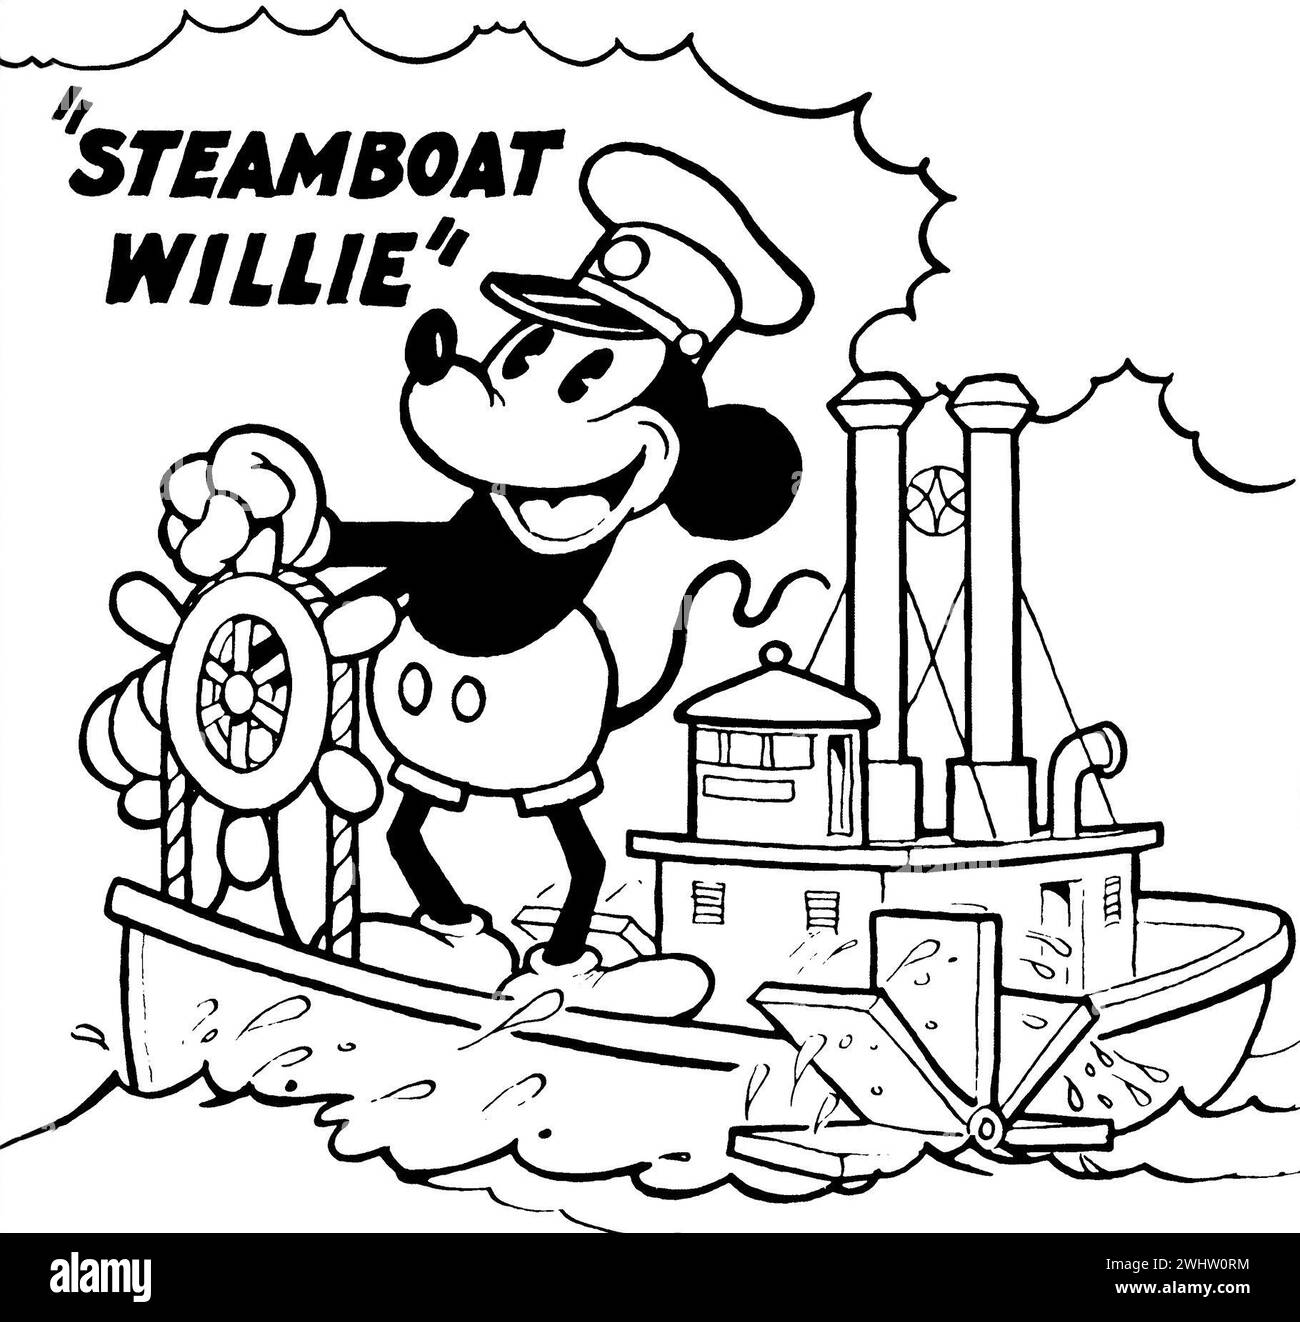 Dampfboot Willie. Ein Original-Poster zum Cartoon von 1928, Steamboat Willie – Mickey Mouse erster animierter Kurzfilm. Stockfoto